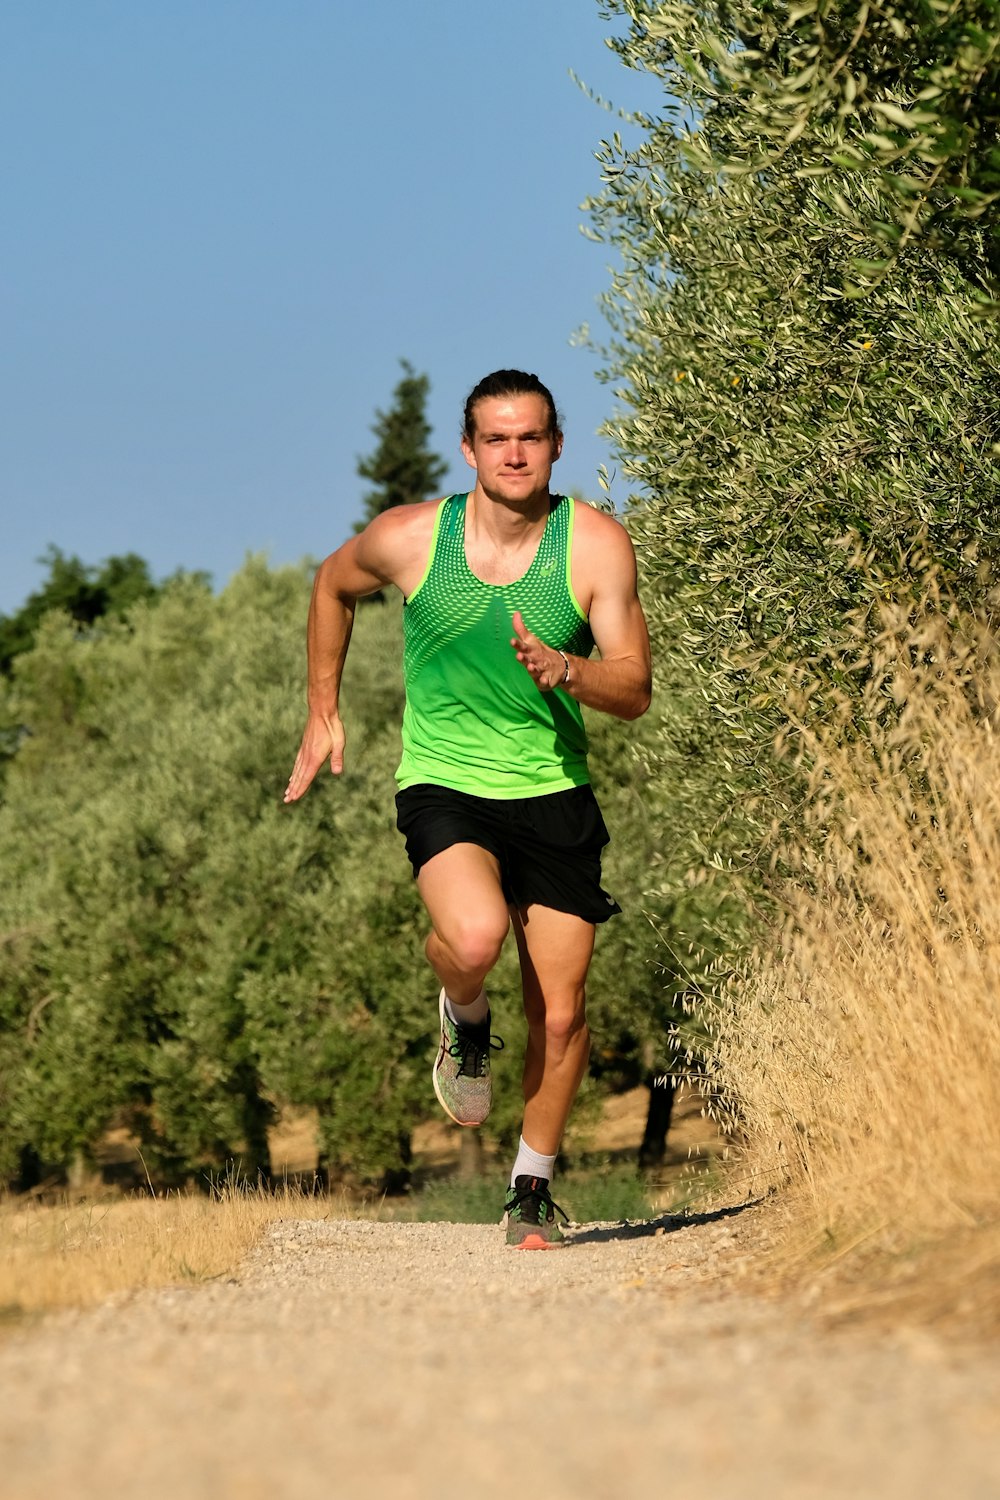 a man in a green shirt running down a dirt road